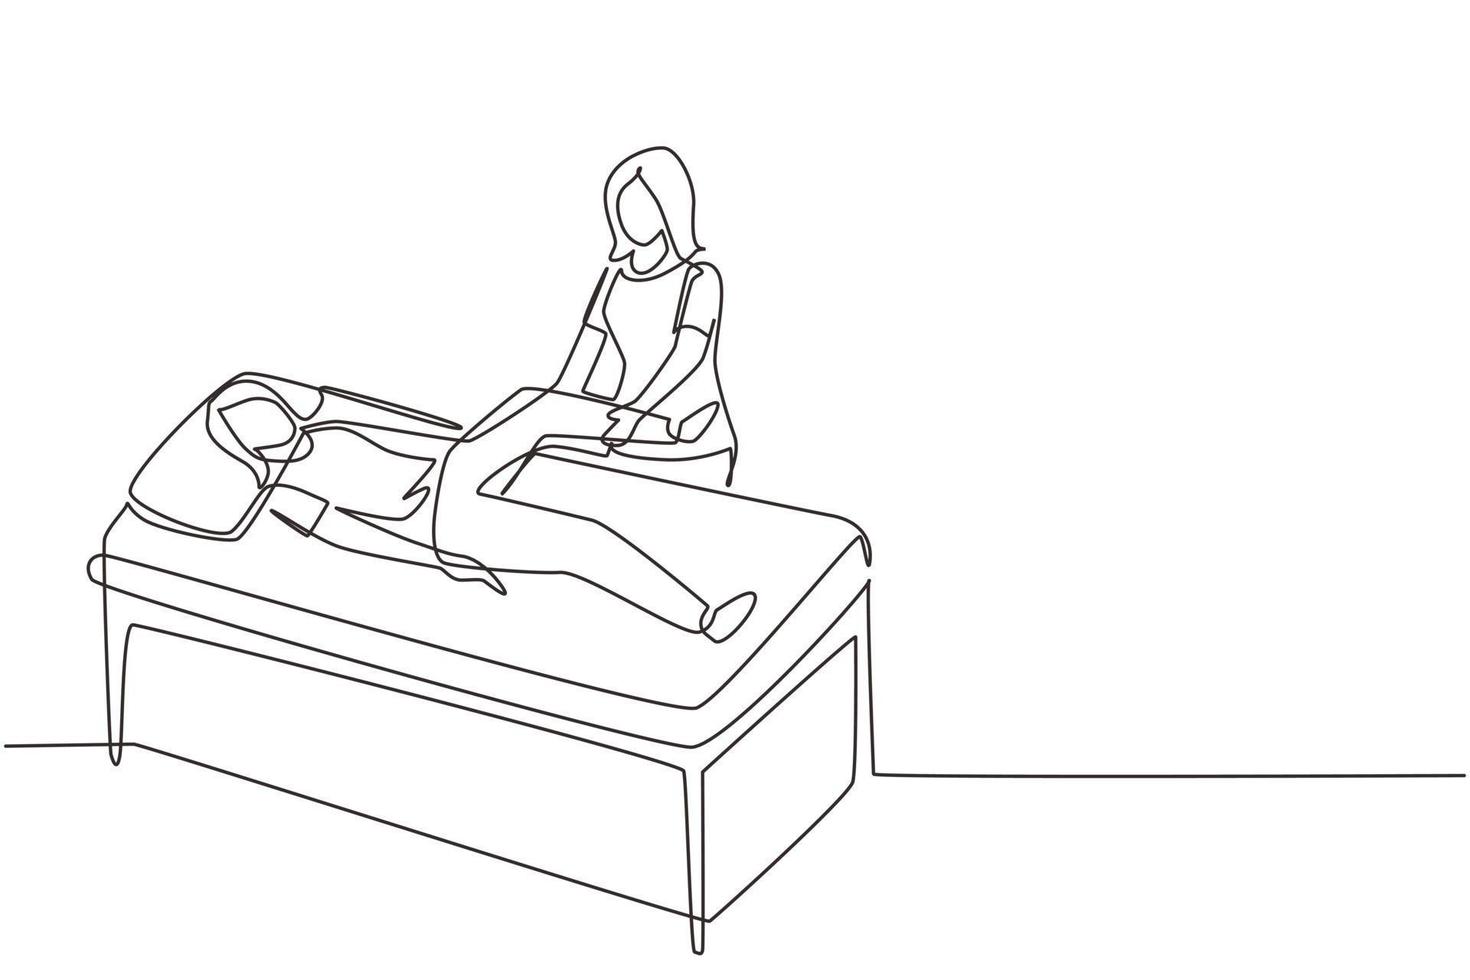 dessin en ligne continue unique femme allongée sur une table de massage masseur thérapeute professionnel faisant un traitement de guérison massant le patient traitant la thérapie physique manuelle du genou. vecteur de conception de dessin d'une ligne